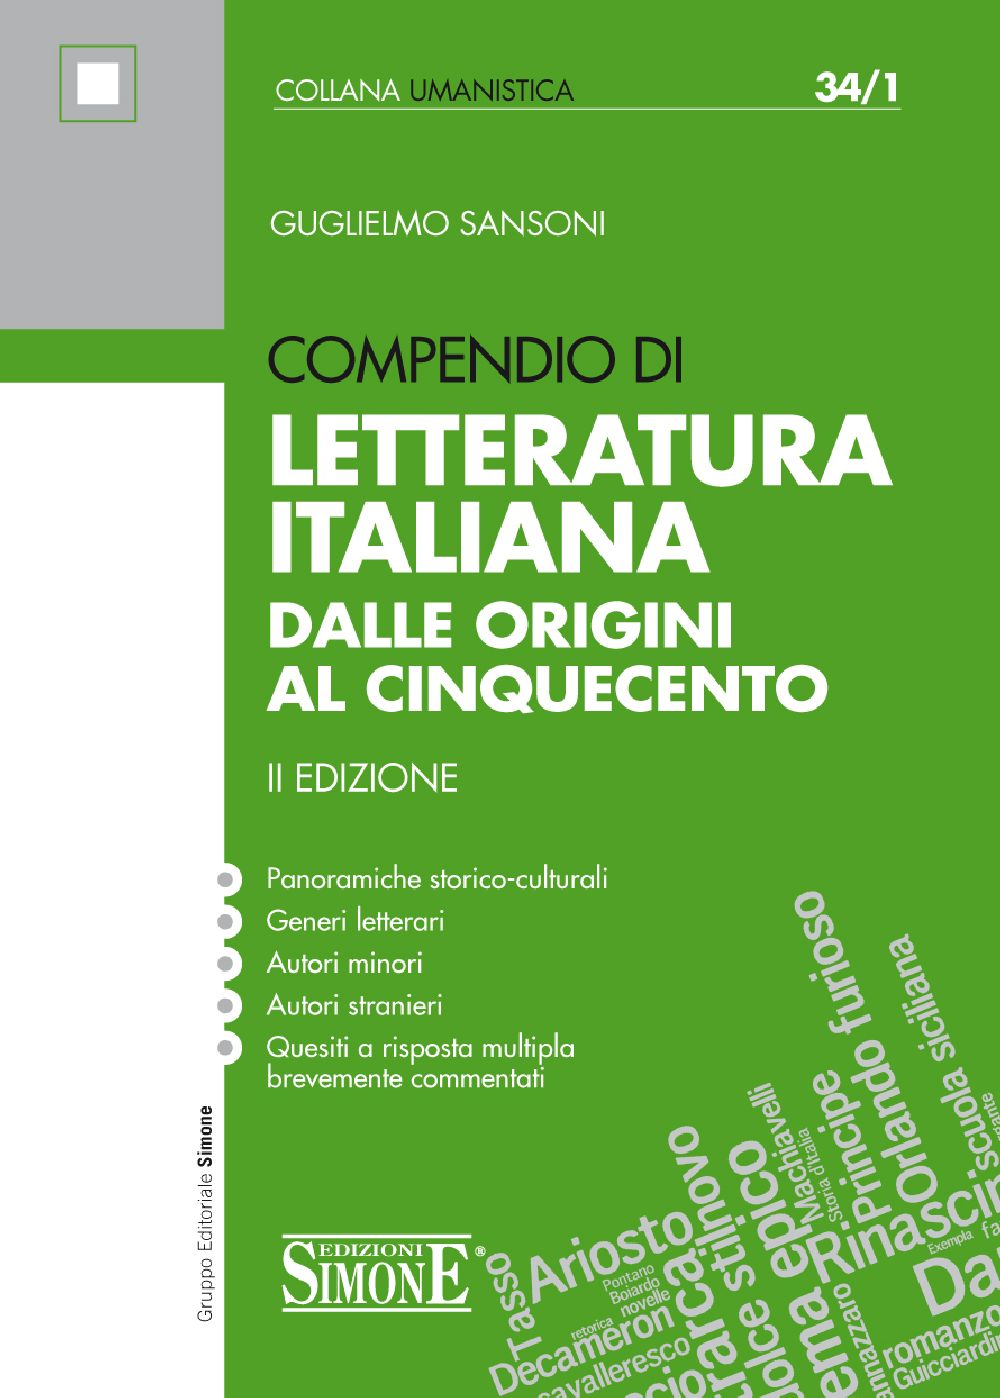 Compendio di Letteratura Italiana dalle Origini al Cinquecento - 34/1 -  Edizioni Simone